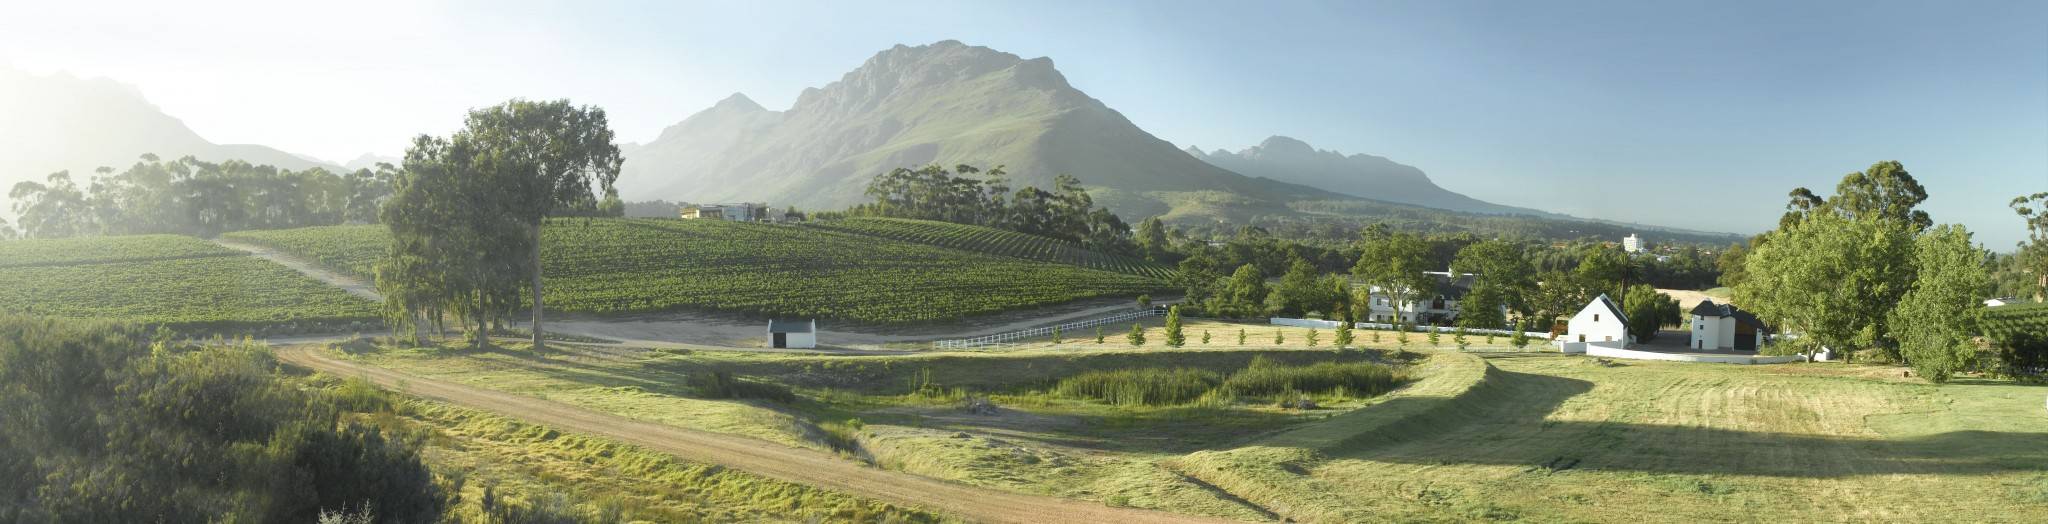 Kaaps Wijnhuis - bijzondere boutique wijnen uit Zuid-Afrika